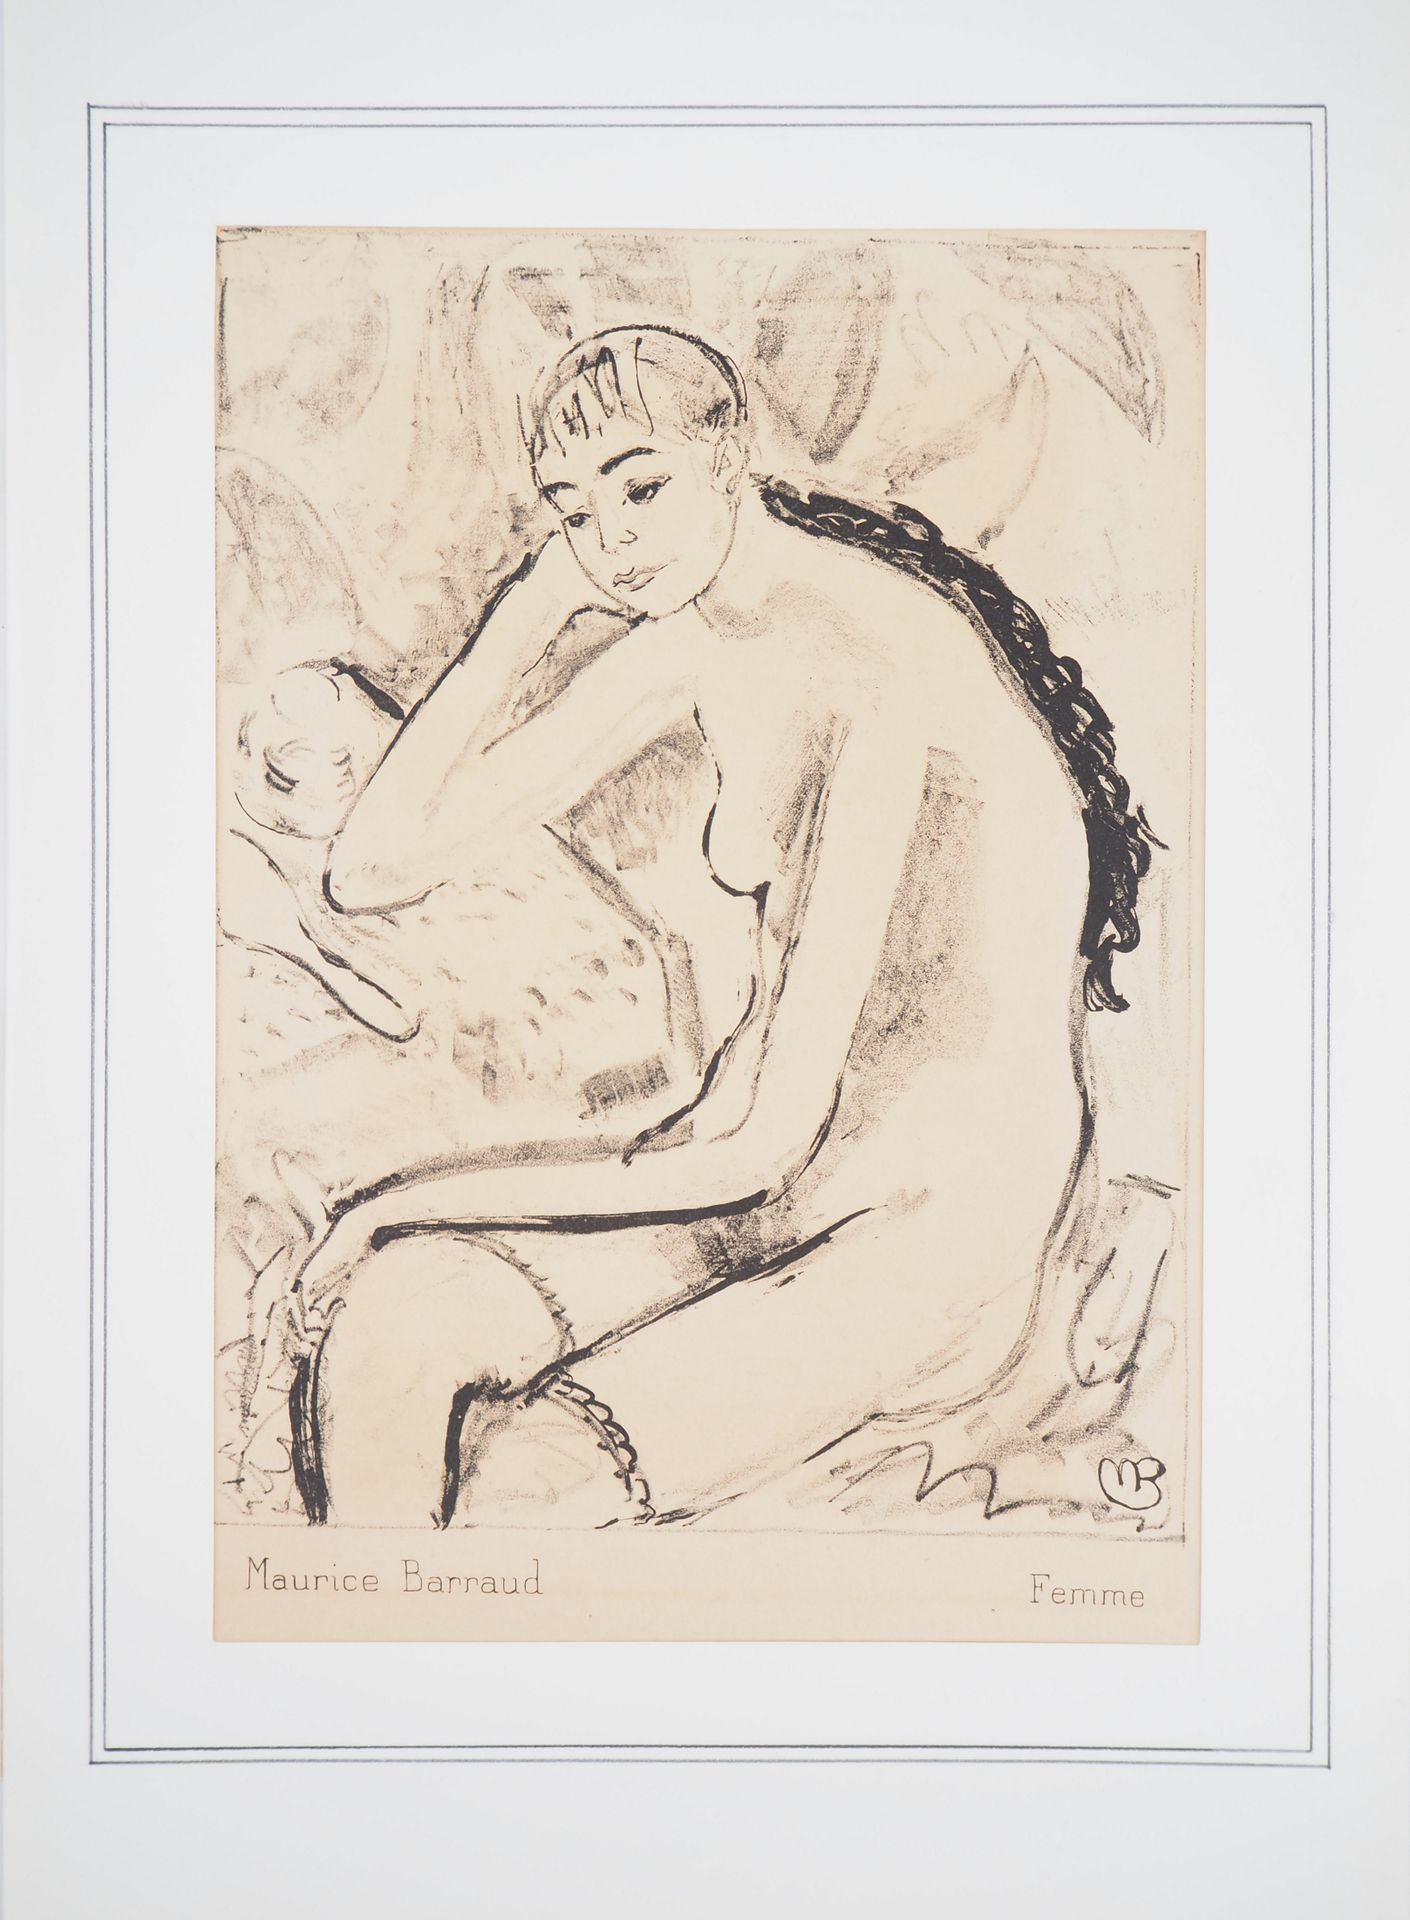 Maurice BARRAUD 莫里斯-巴罗德

穿吊带的女人

原始石版画

板块中的签名

纸本 22 x 16,5 cm

以厚厚的纸质封面呈现 21 x&hellip;